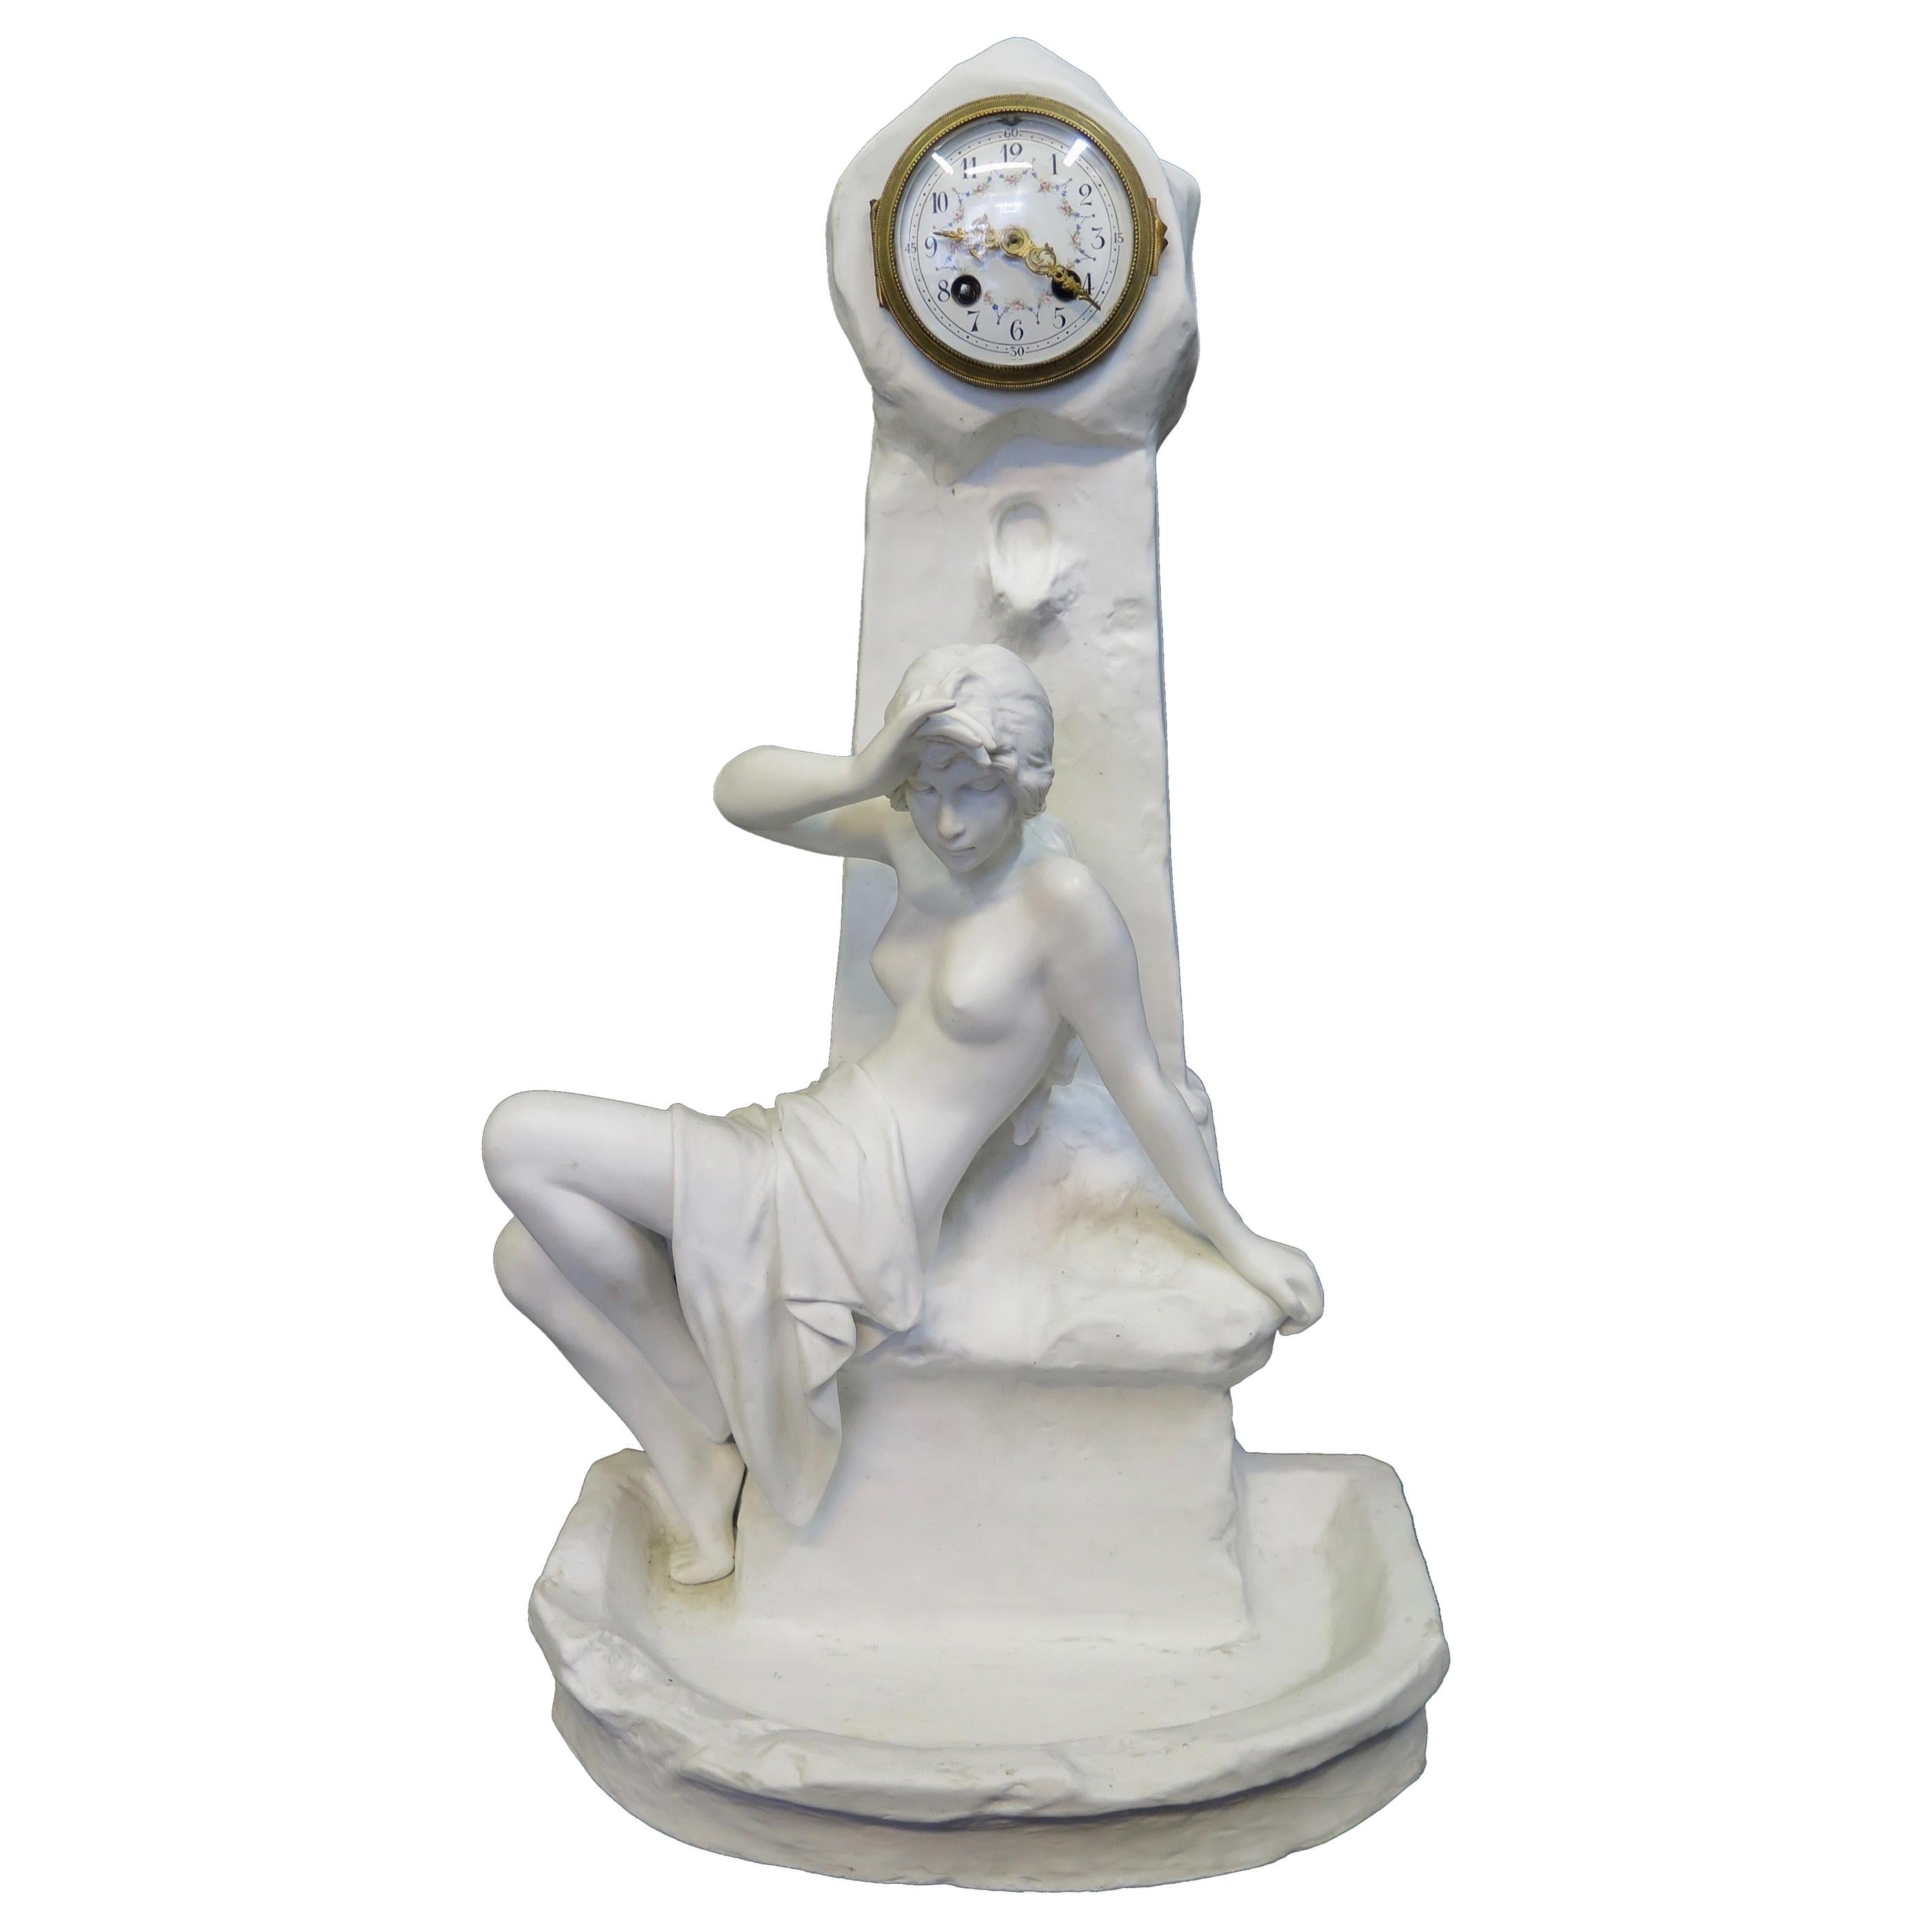 Vintage Art Nouveau Period Emmanuel Villains Porcelain Sculpture with Clock